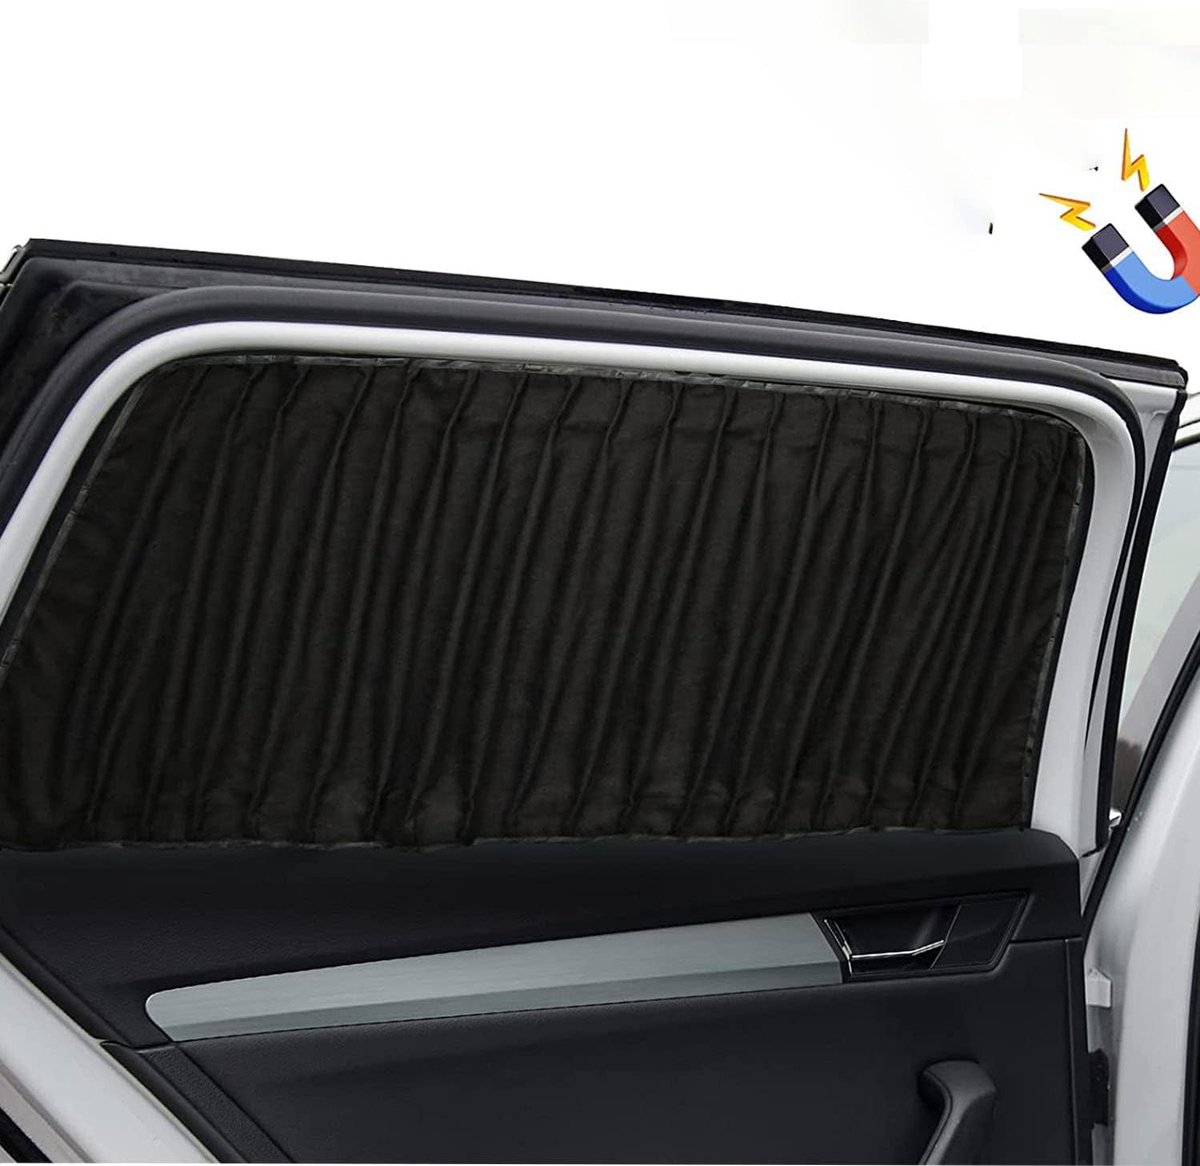 Rideau de Protection solaire pour voiture – Rideau de fenêtre magnétique  pour bloquer